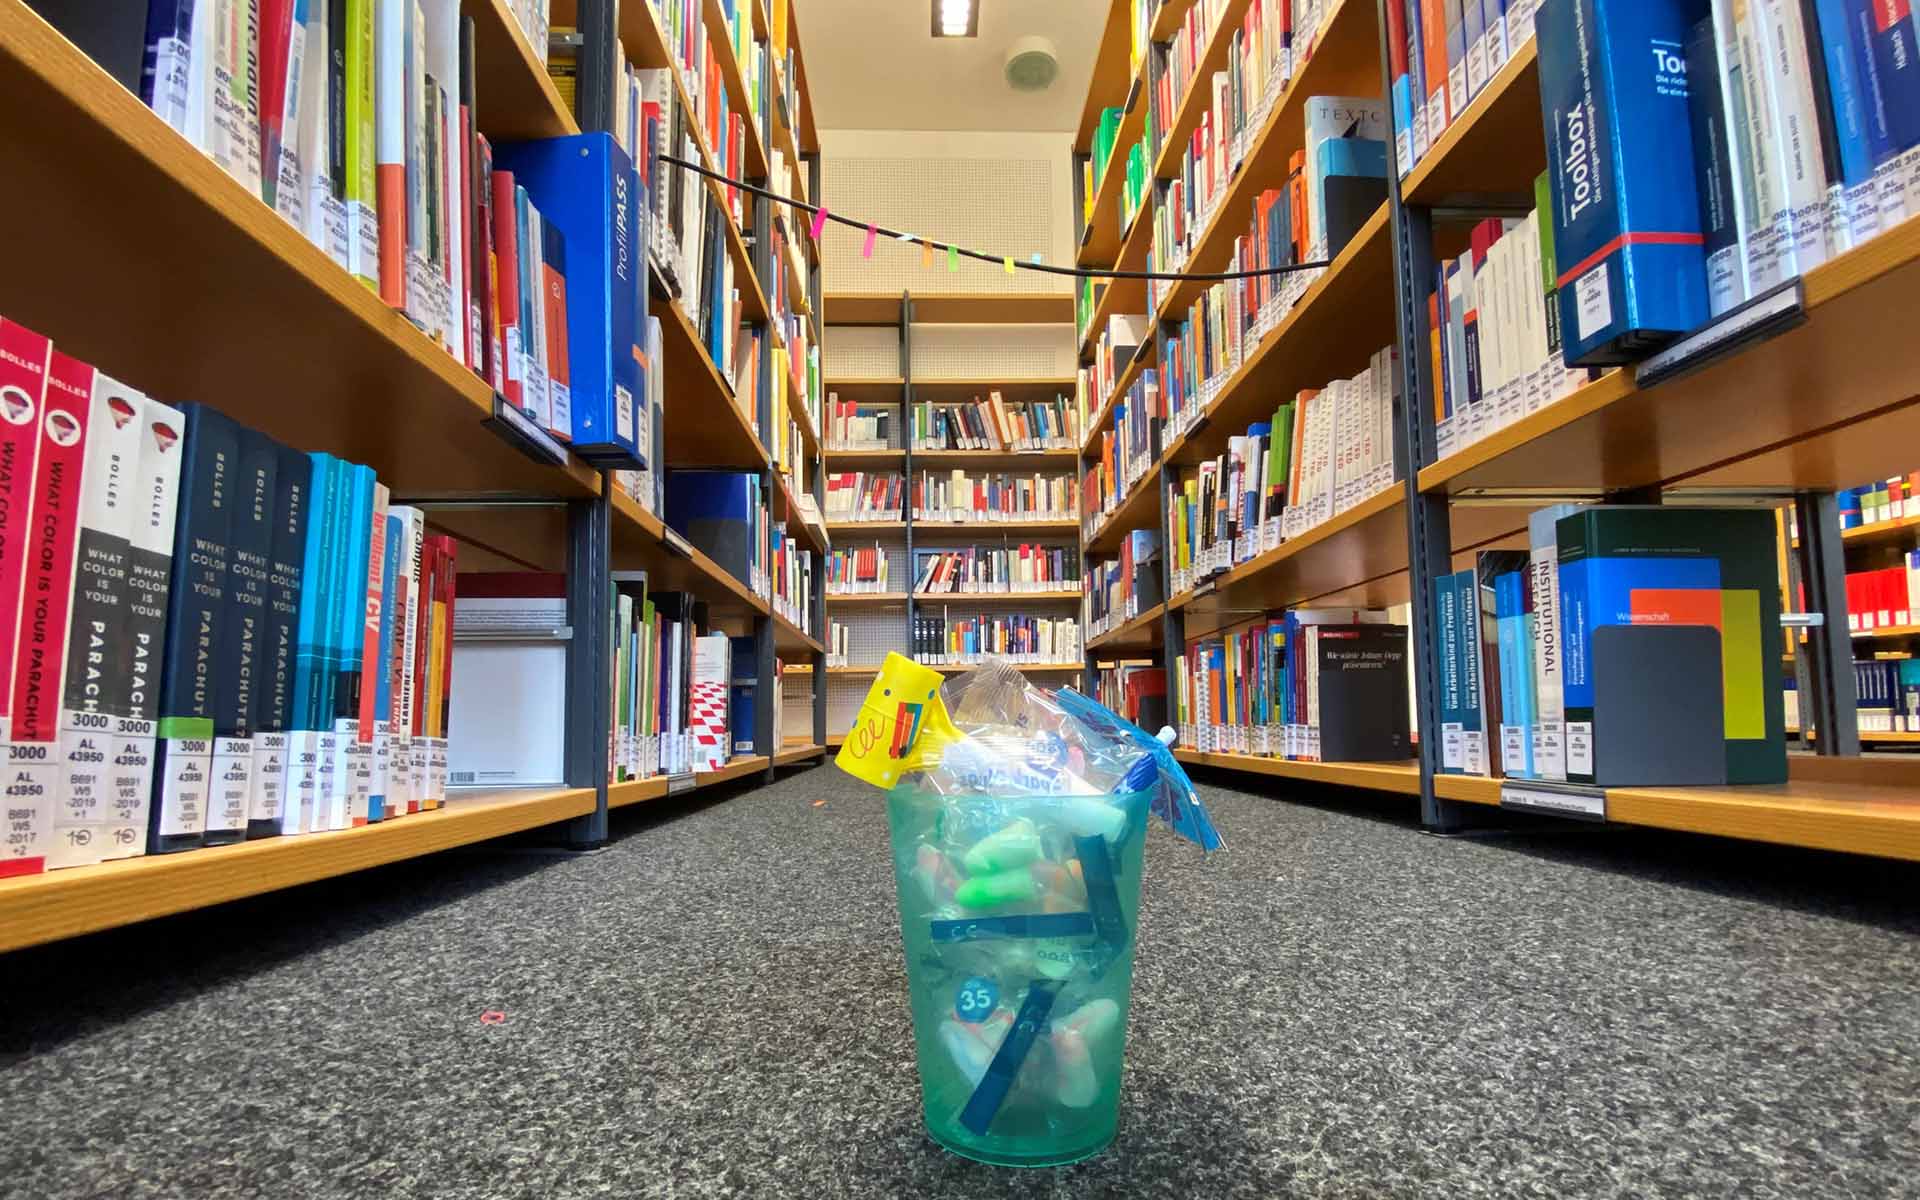 auf dem Boden vor mehreren Bücherregalen steht ein türkisfarbener Becher, der mit Ohrenstöpseln und einem Papierschirmchen gefüllt ist